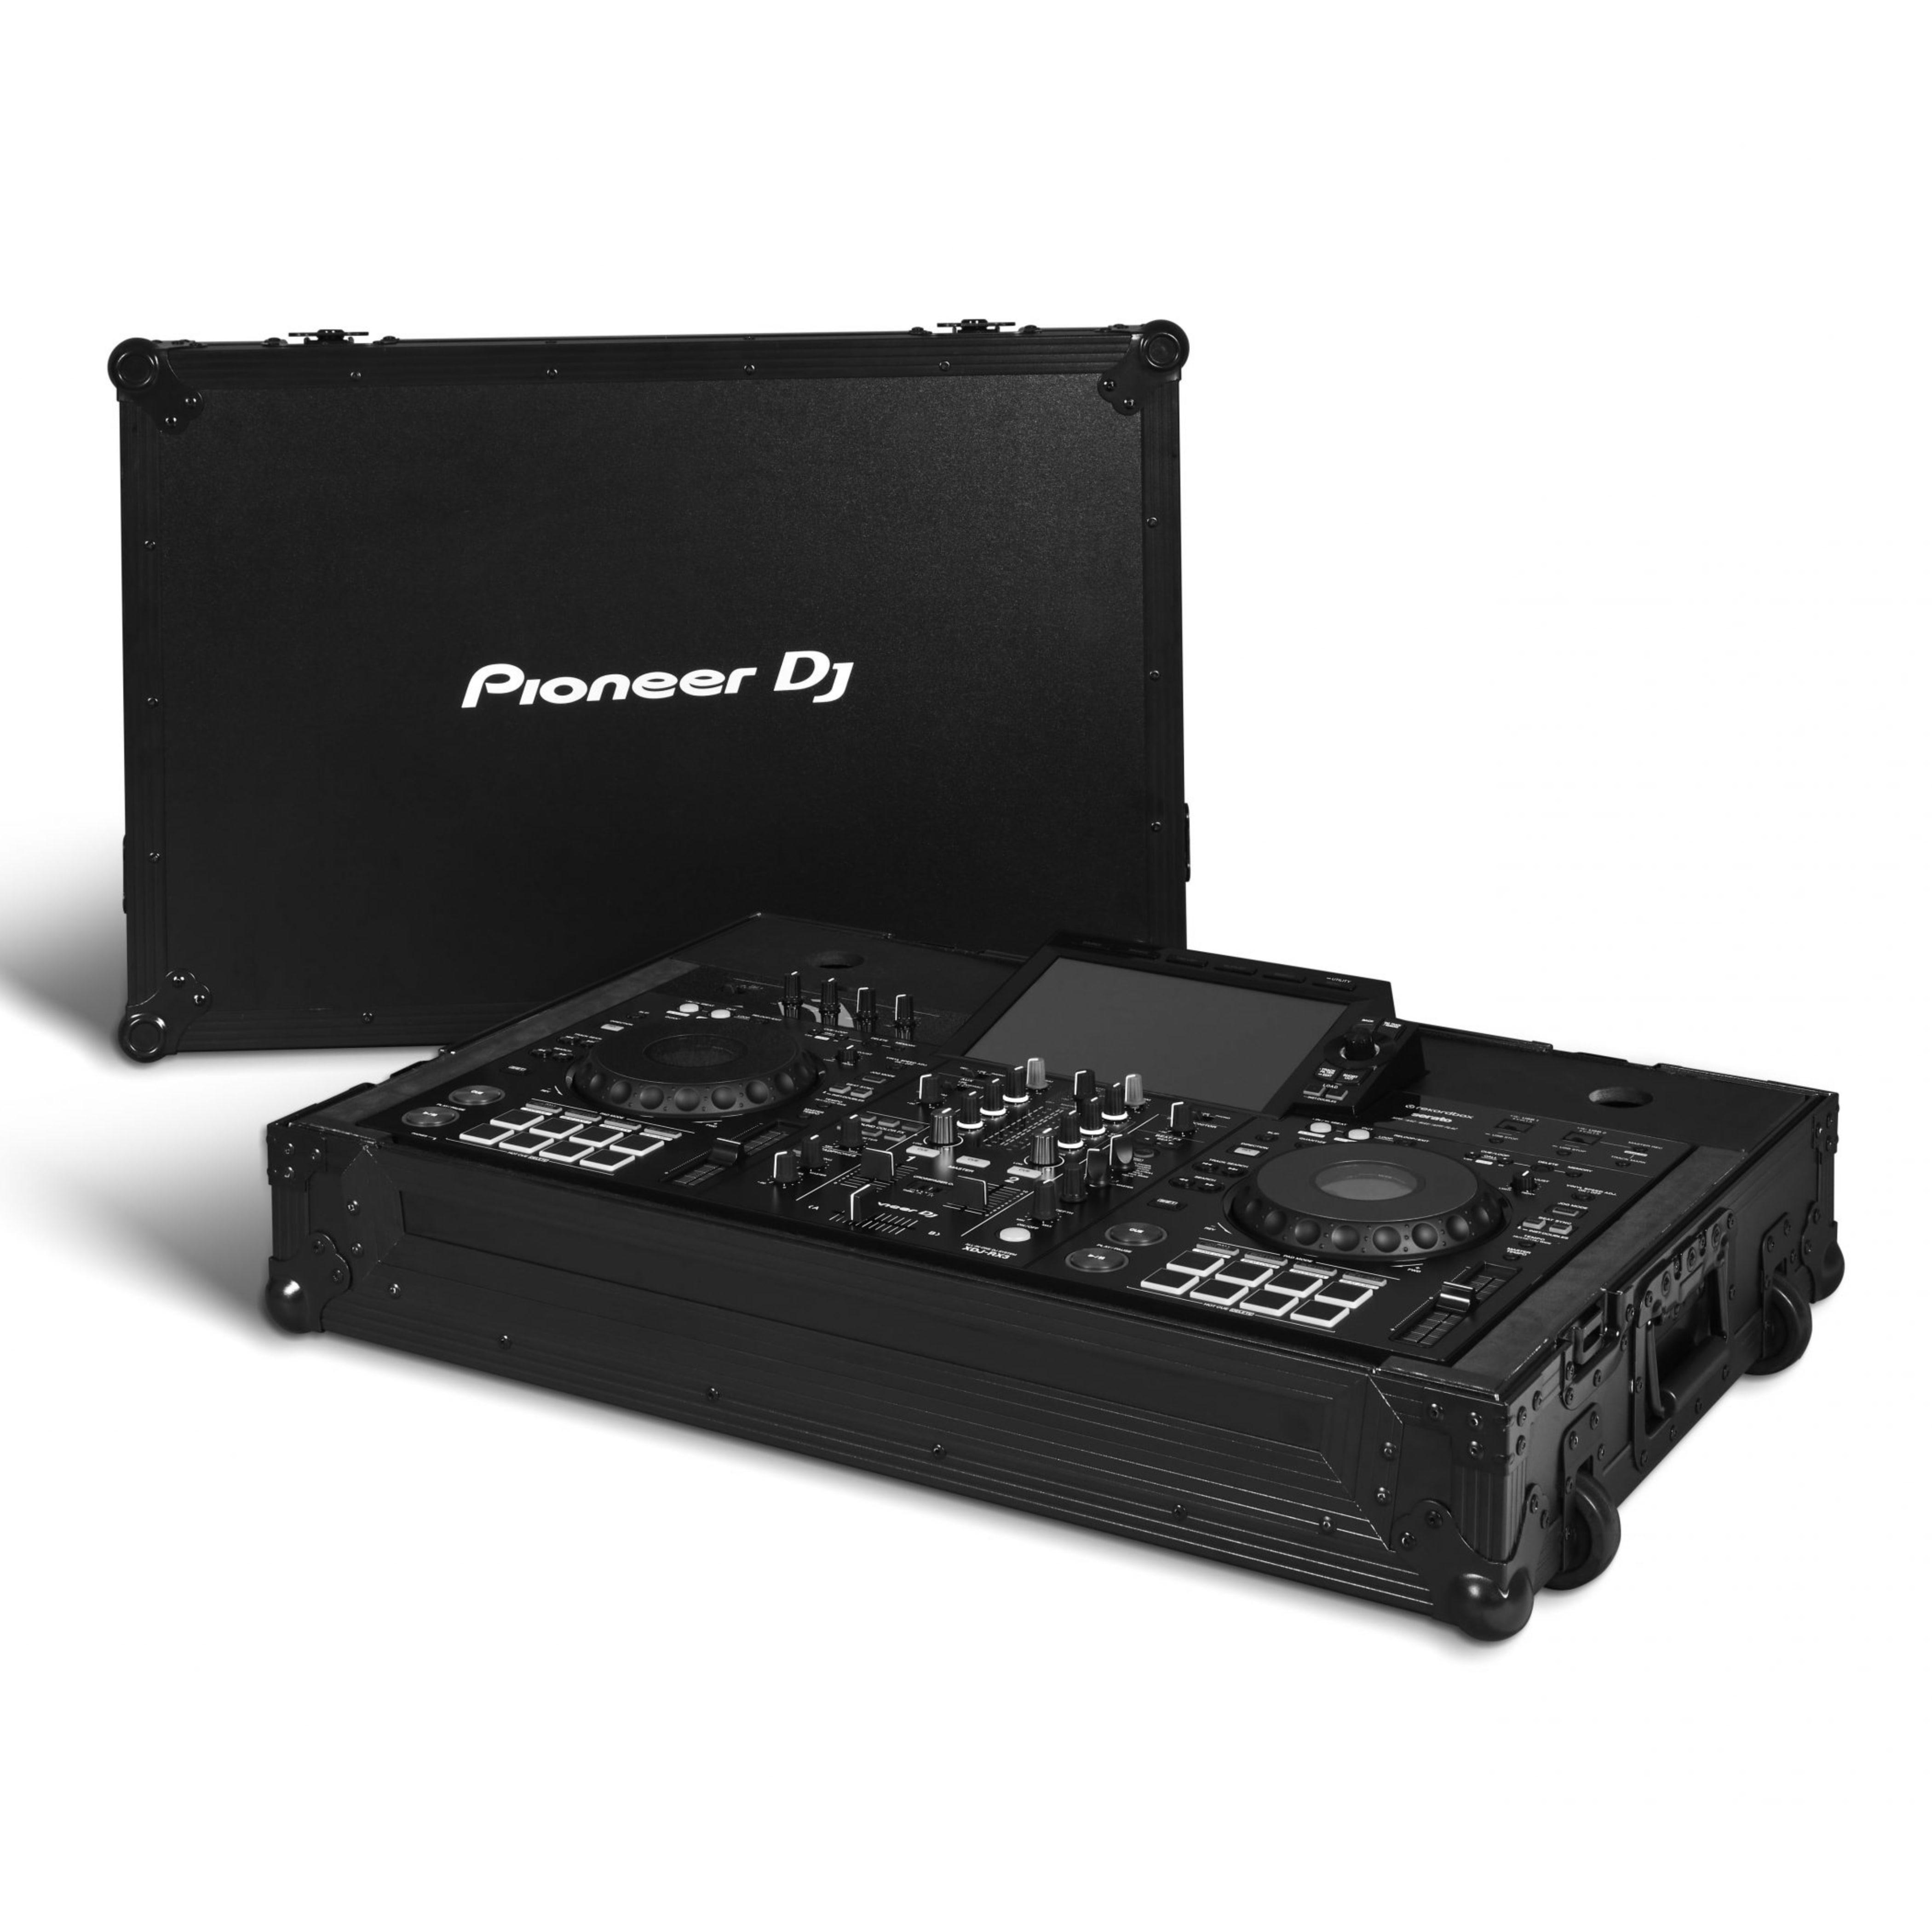 Pioneer DJ FLT-XDJRX3 Open with RX3 & Lid